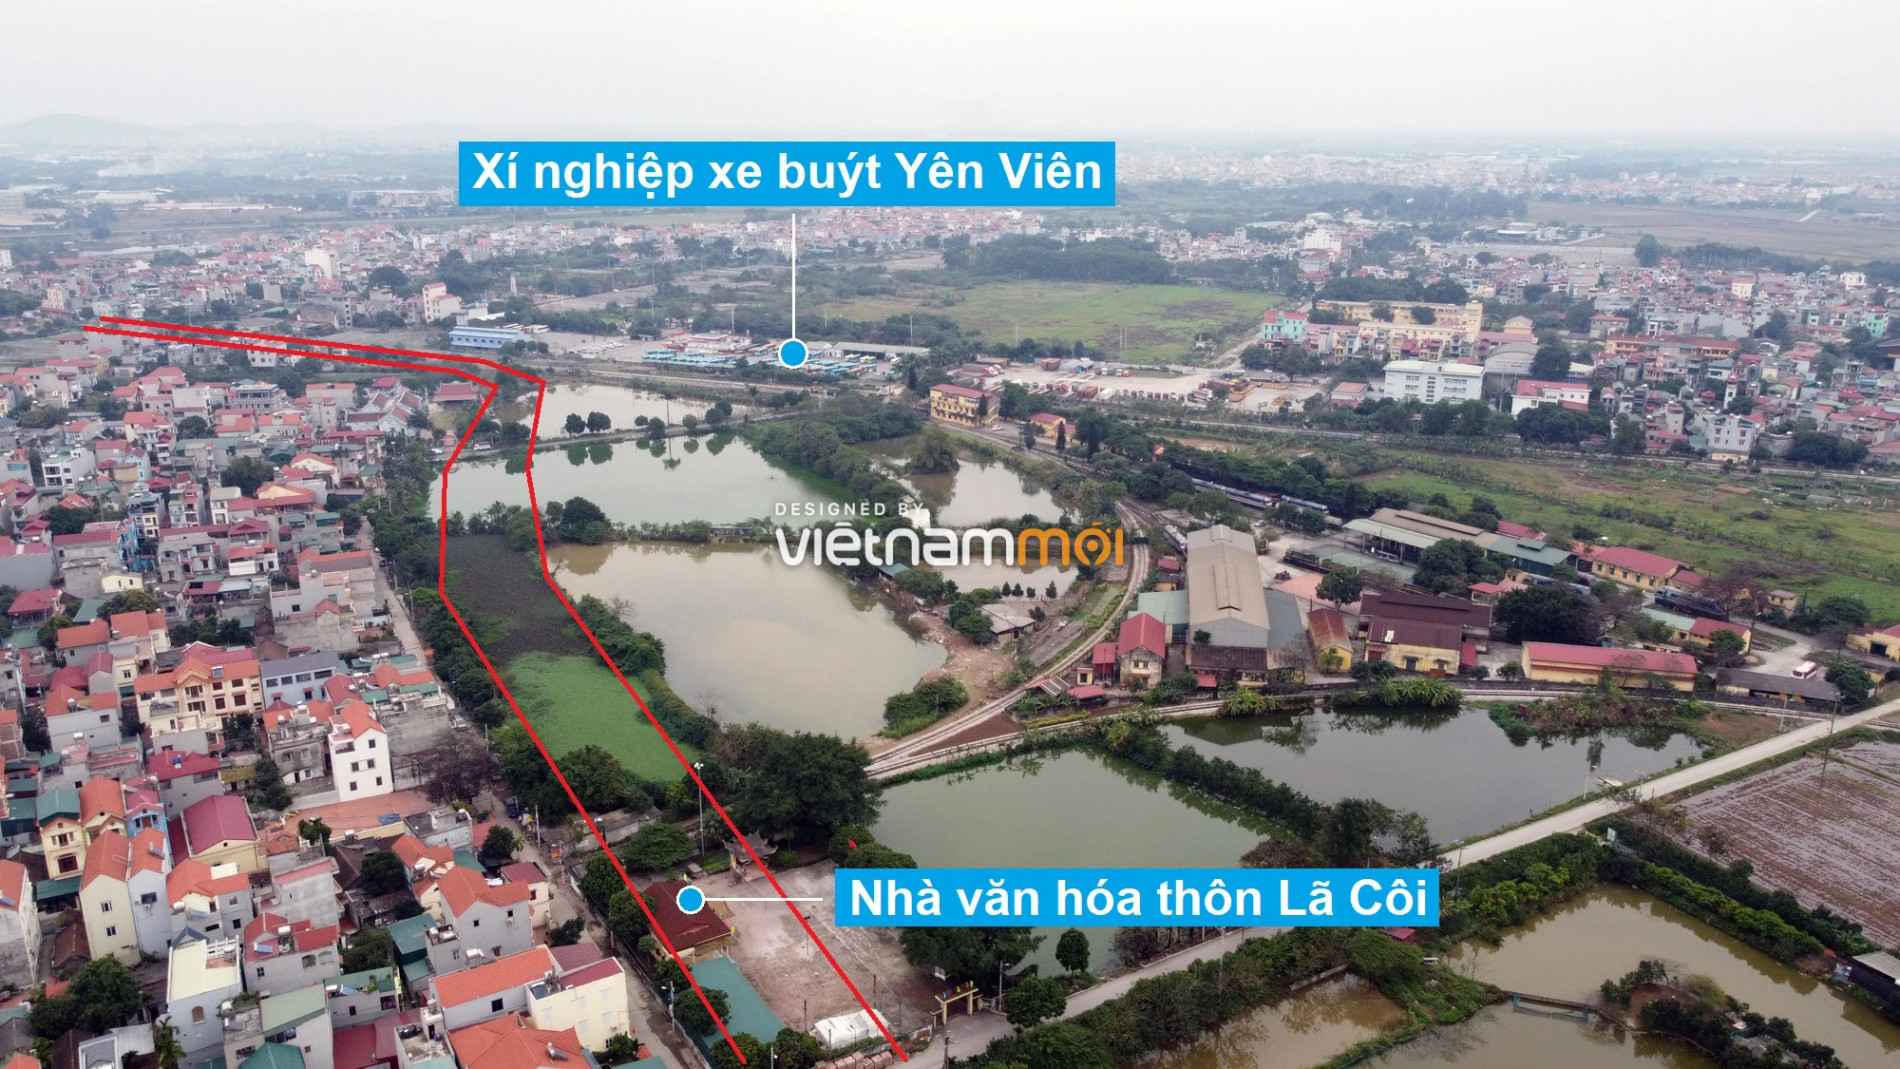 Những khu đất sắp thu hồi để mở đường ở huyện Gia Lâm, Hà Nội (phần 2) - Ảnh 6.